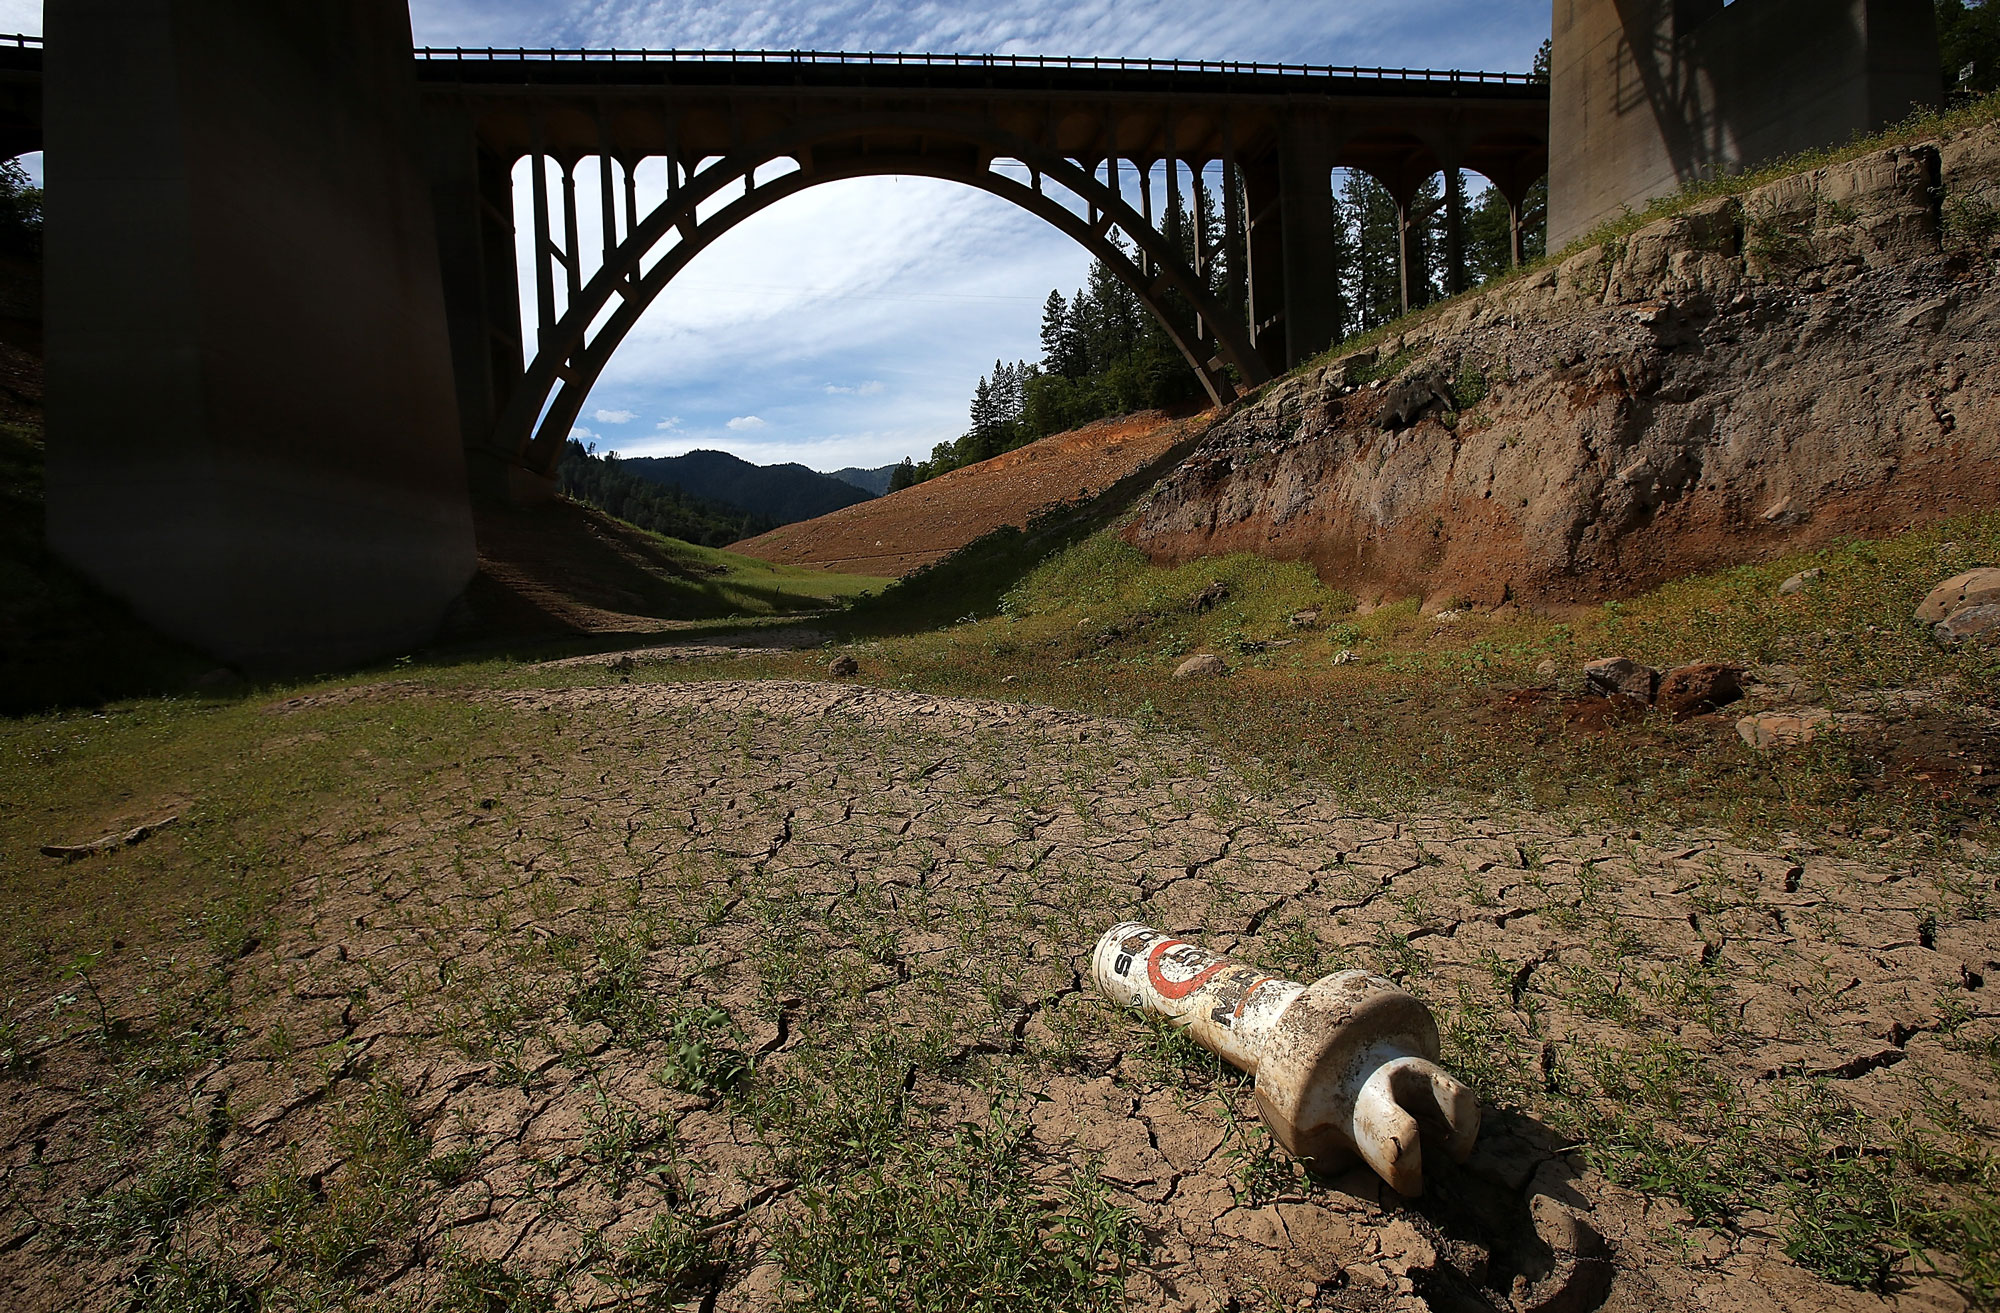 Cơn hạn hán khủng khiếp nhất trong lịch sử tại California. Mặt đất khô nứt nẻ của hồ Shasta vào ngày 30 tháng 8.